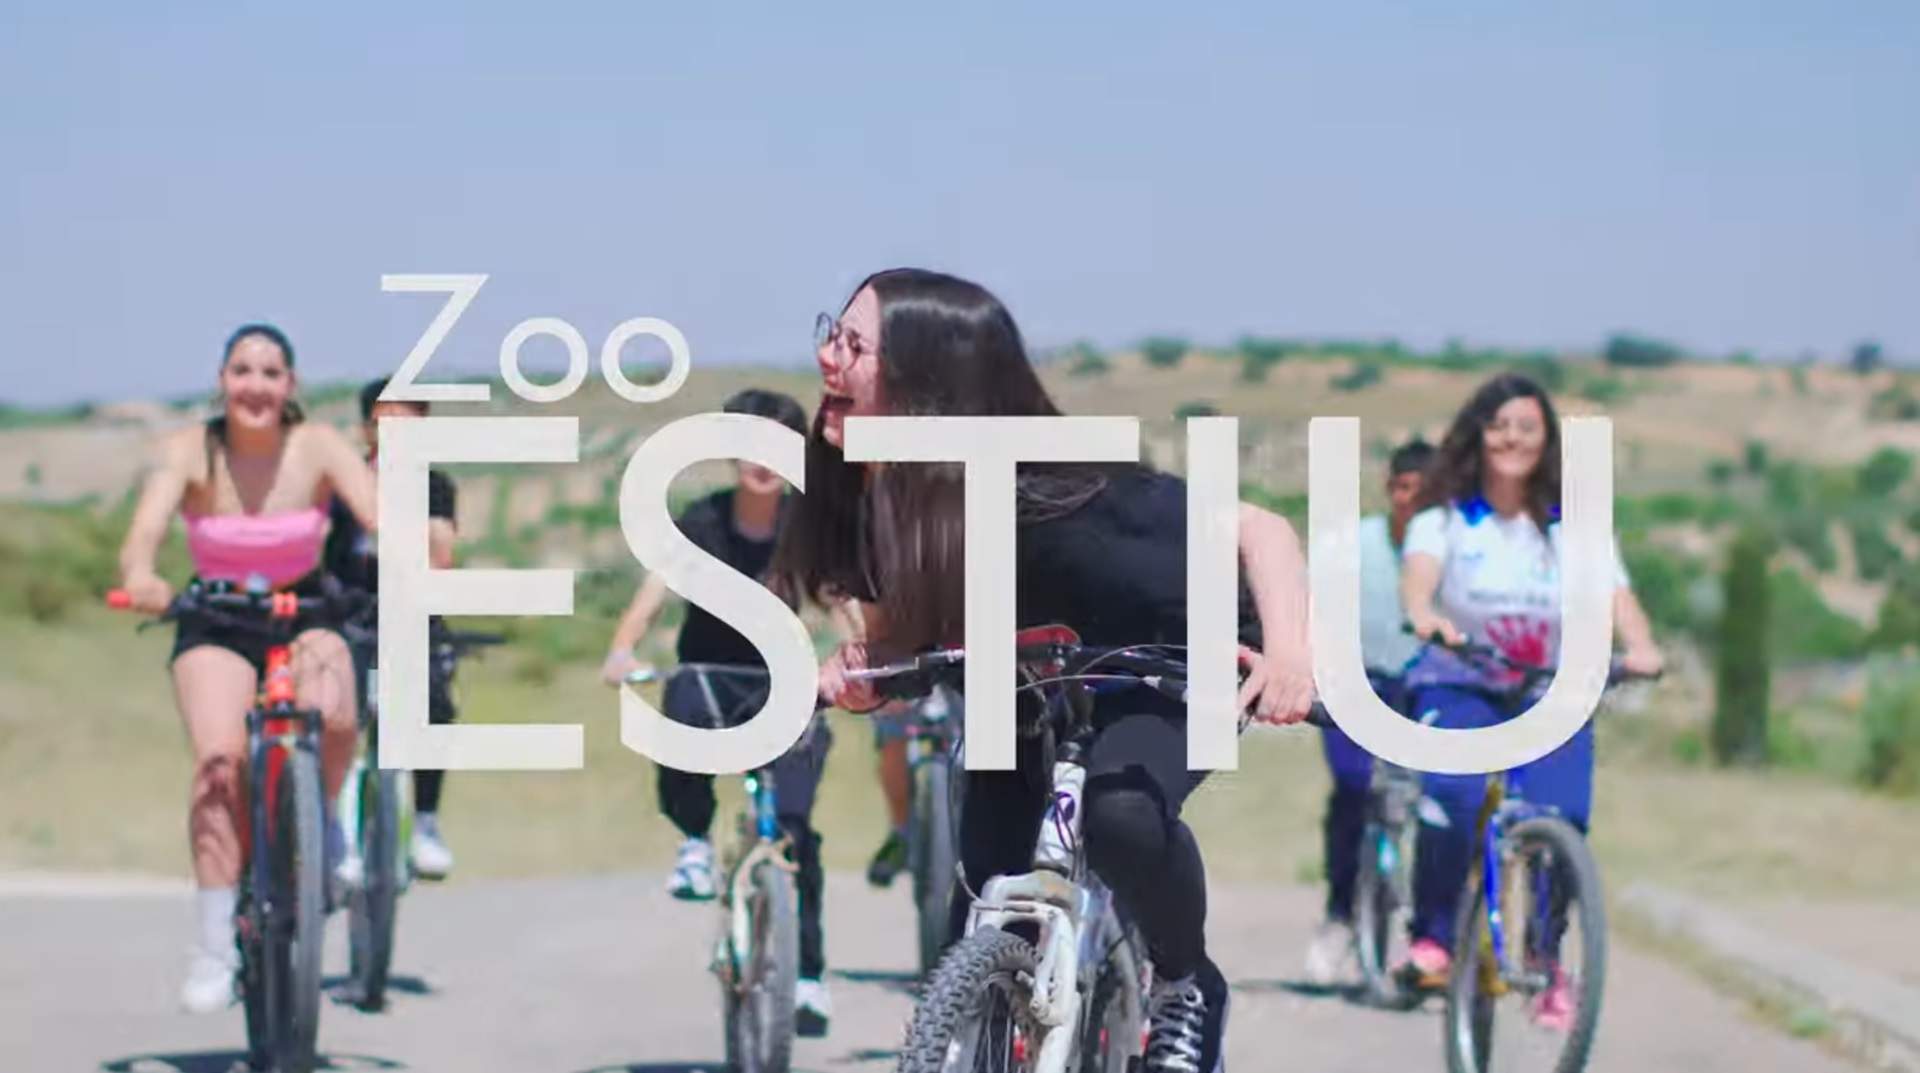 Un institut d'Albacete es fa viral: s'atreveix amb el català amb la cançó 'Estiu' de Zoo